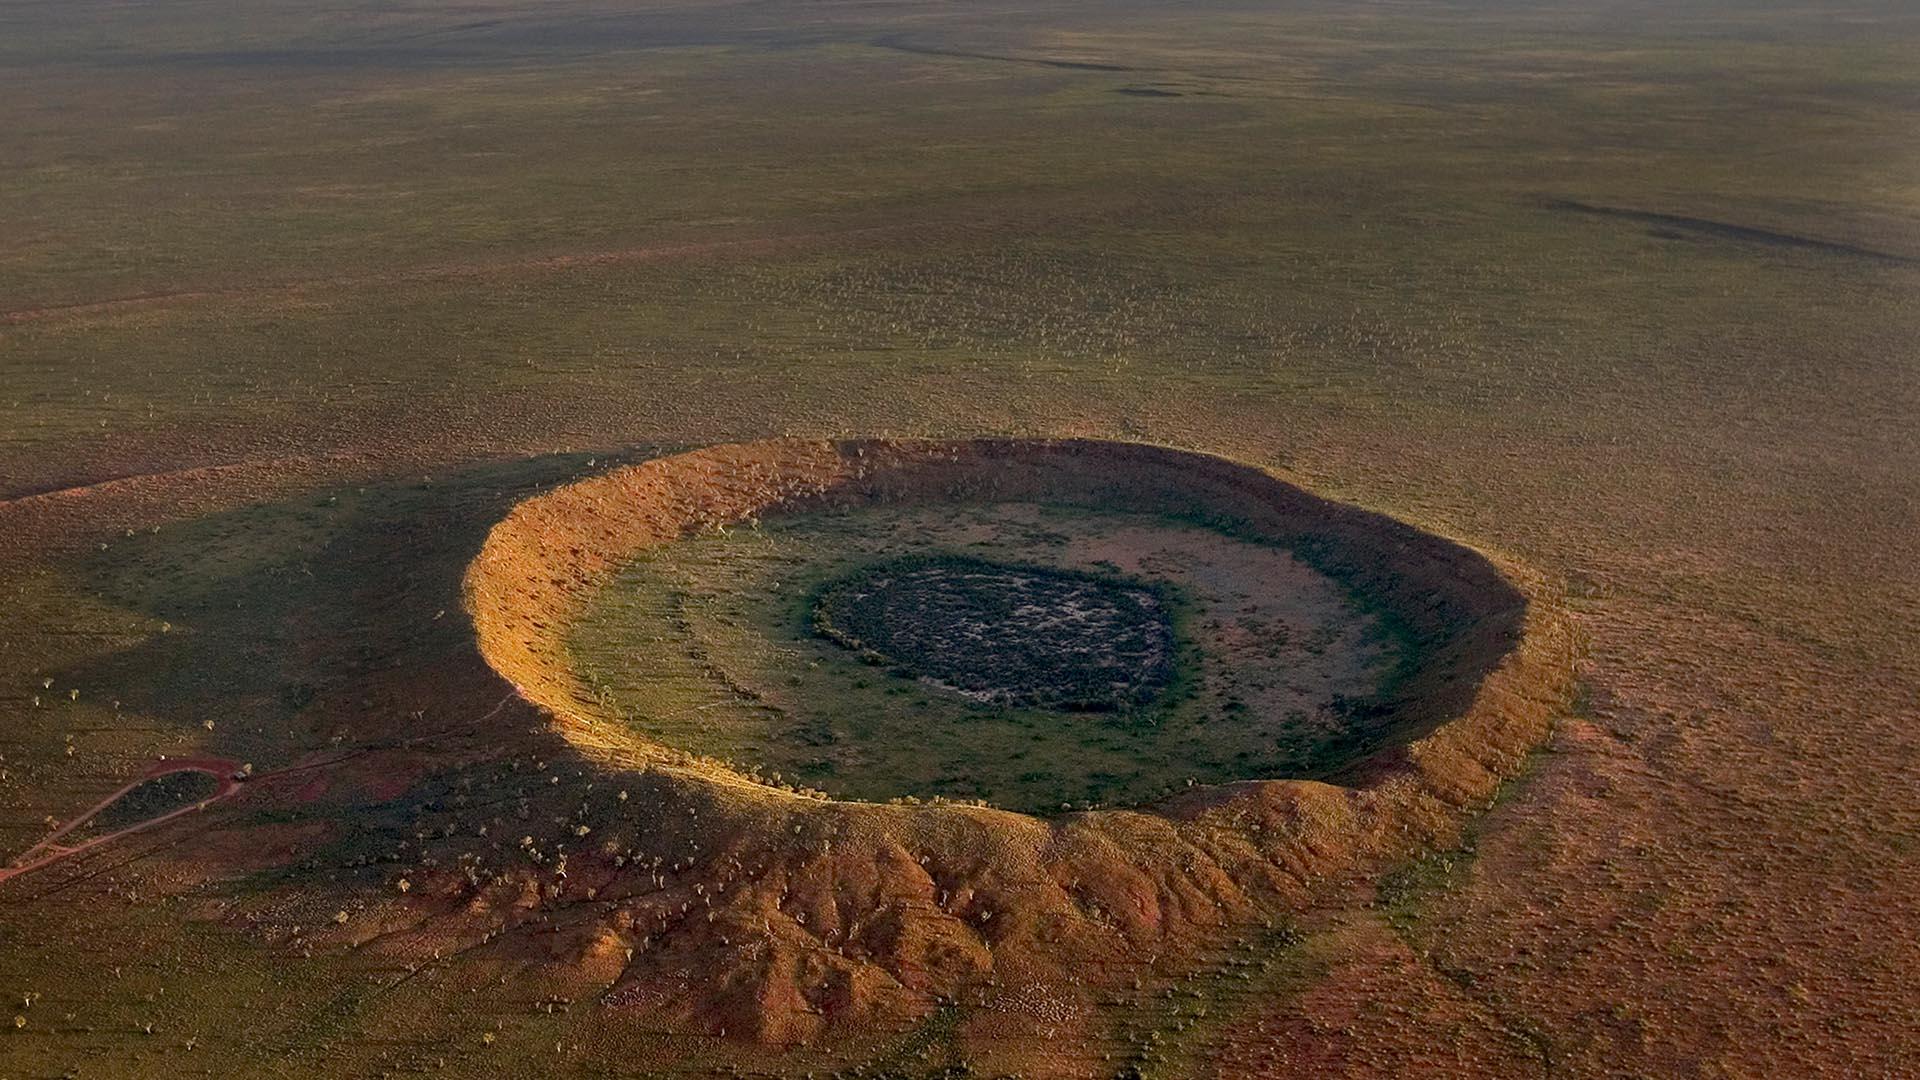 meteorite impact crater, meteorite impact crater scotland, new meteorite impact crater scotland